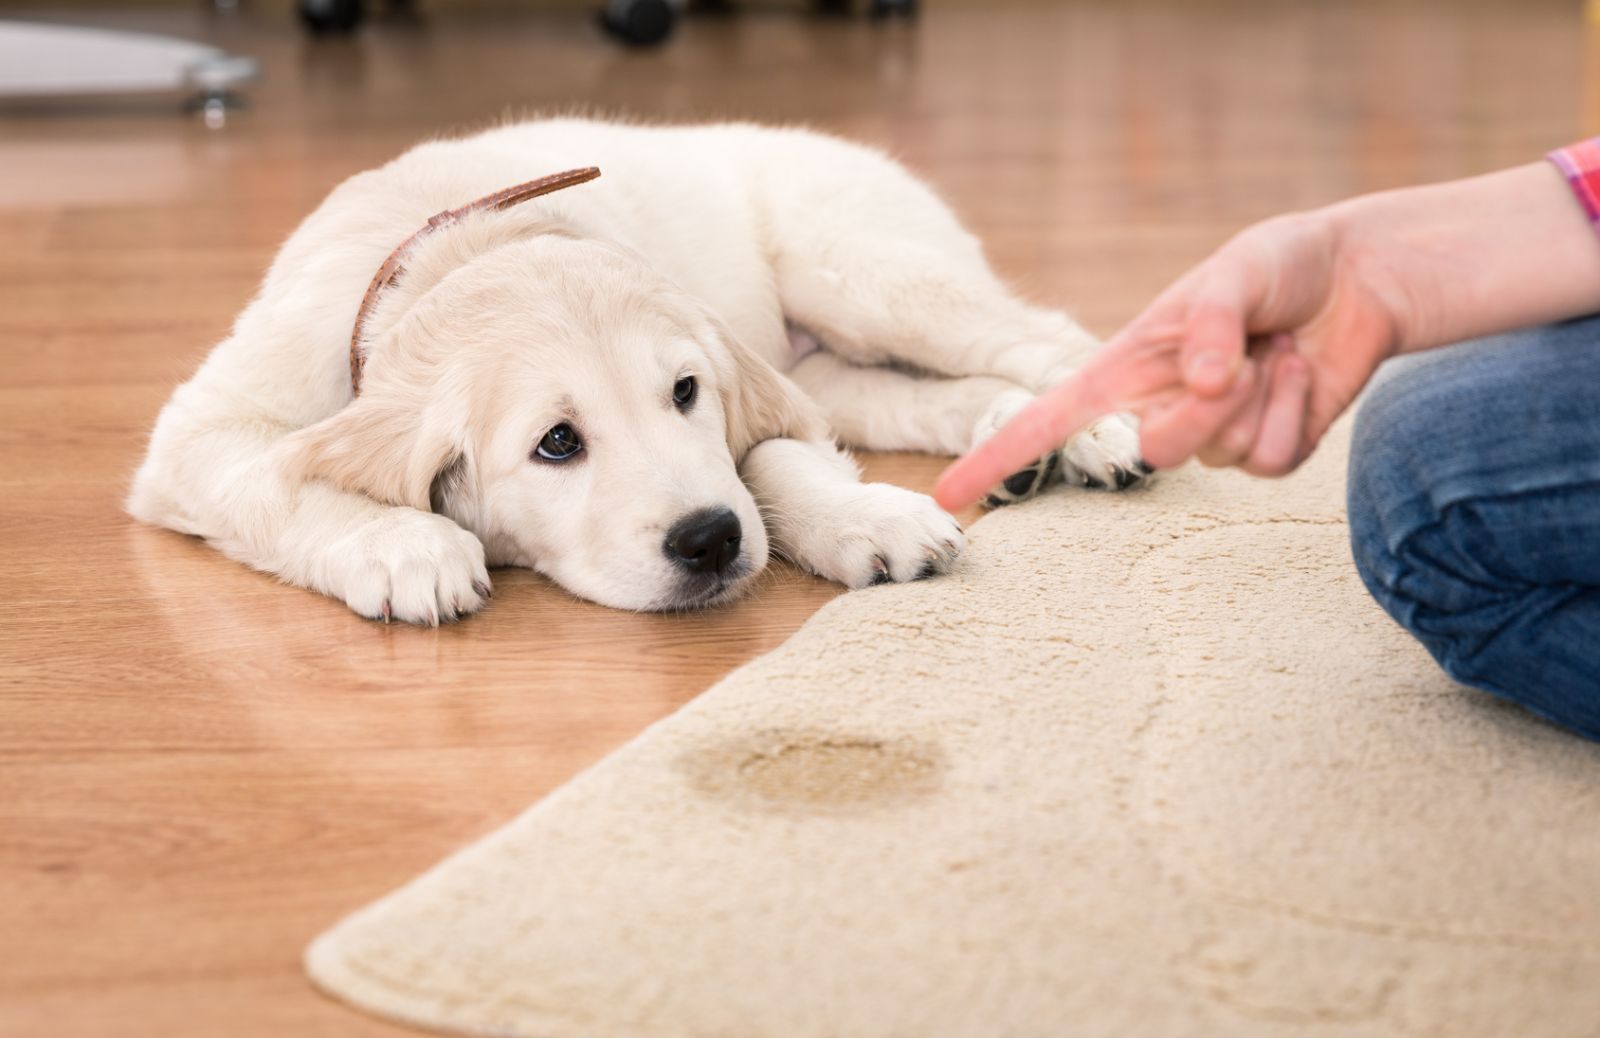 Cuccioli di cane: come insegnar loro a fare i bisogni fuori casa